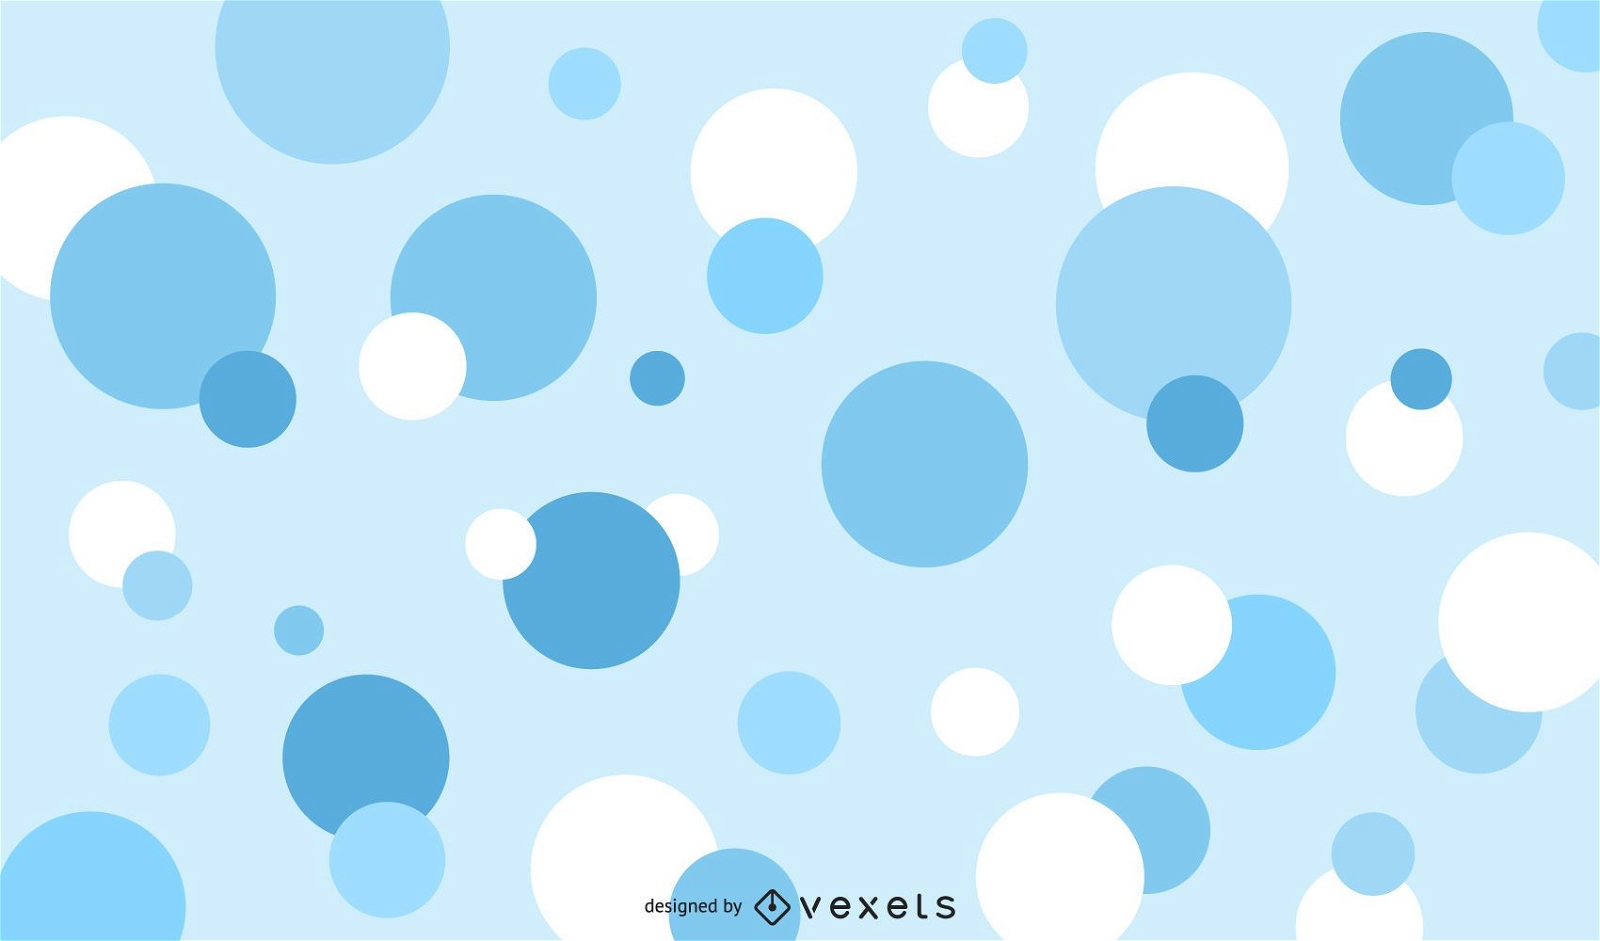 Circle bubbles backgrounds